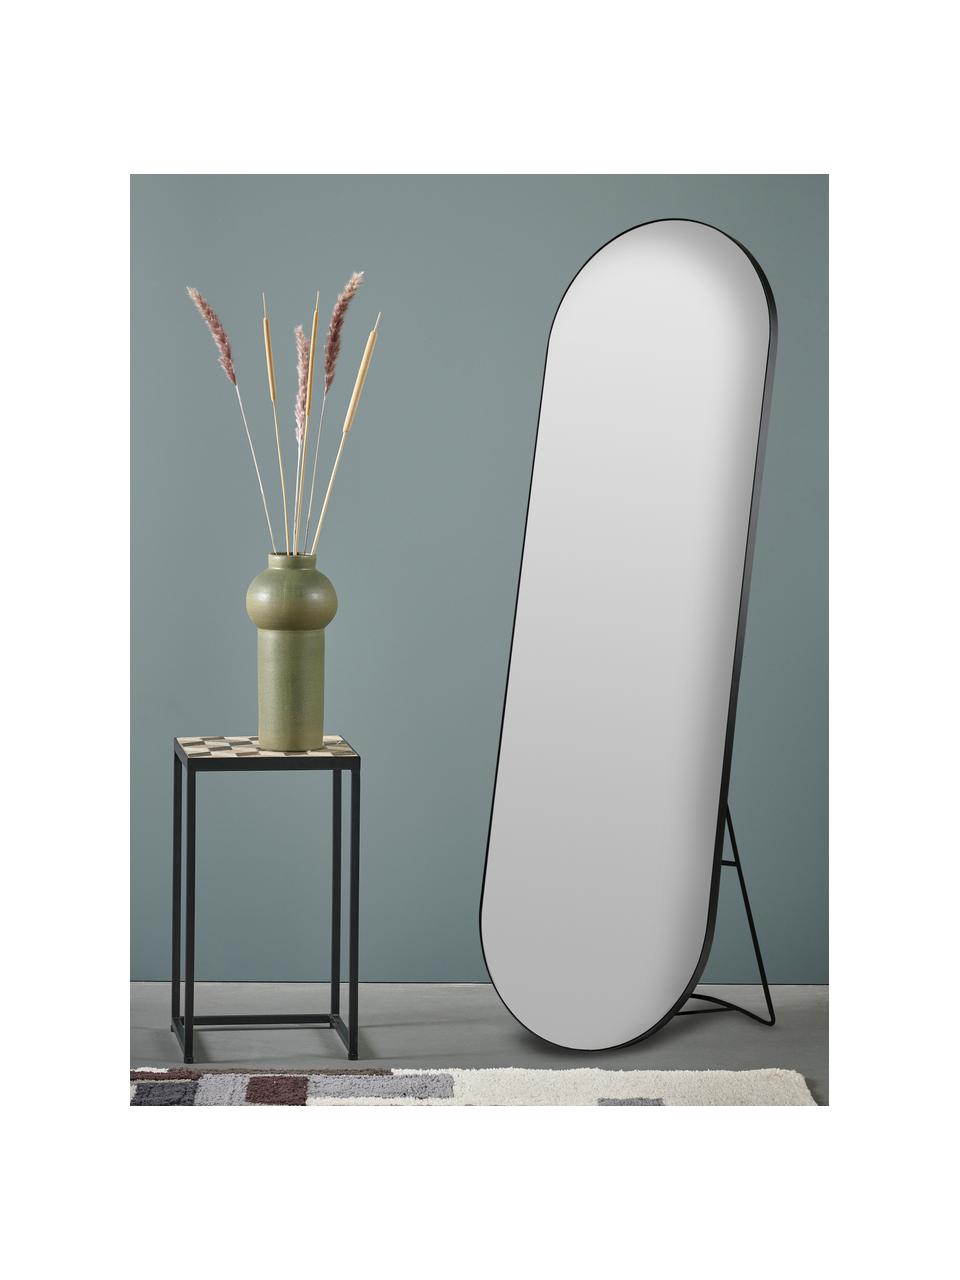 Ovaler Standspiegel Stano, Rahmen: Metall, beschichtet, Spiegelfläche: Spiegelglas, Schwarz, B 55 x H 170 cm